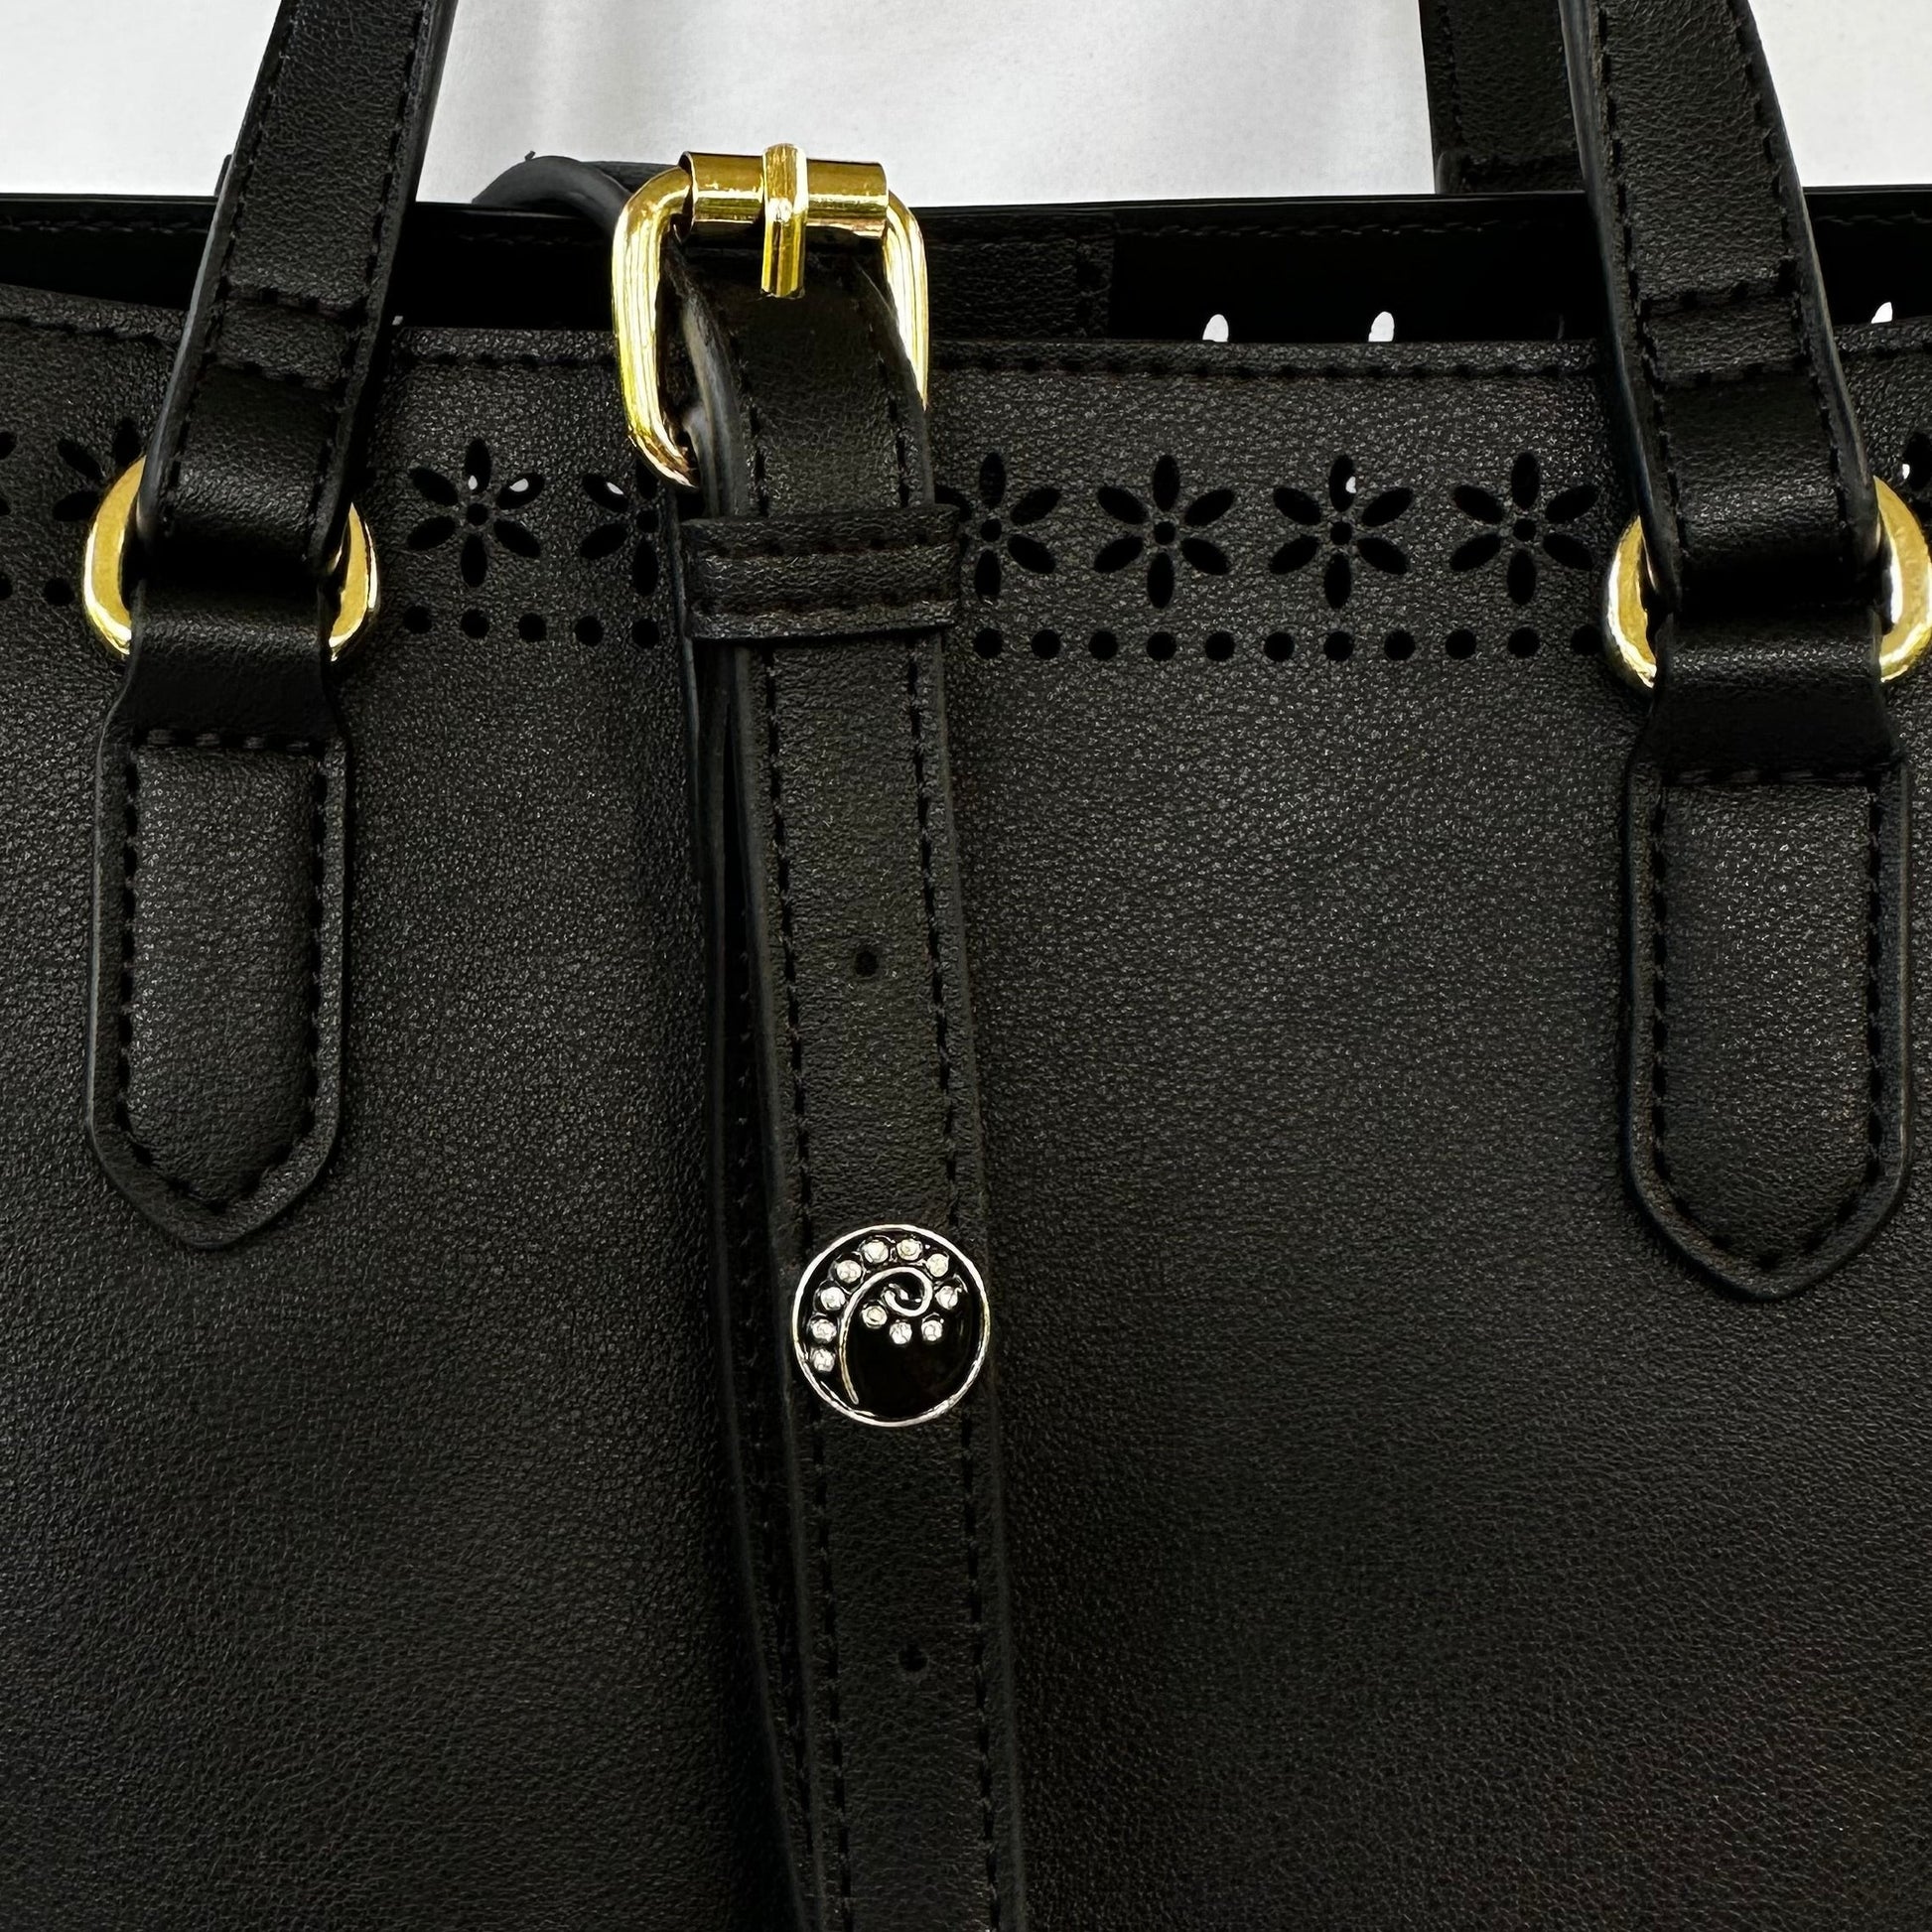 Black Design Belt and Bag Charm 